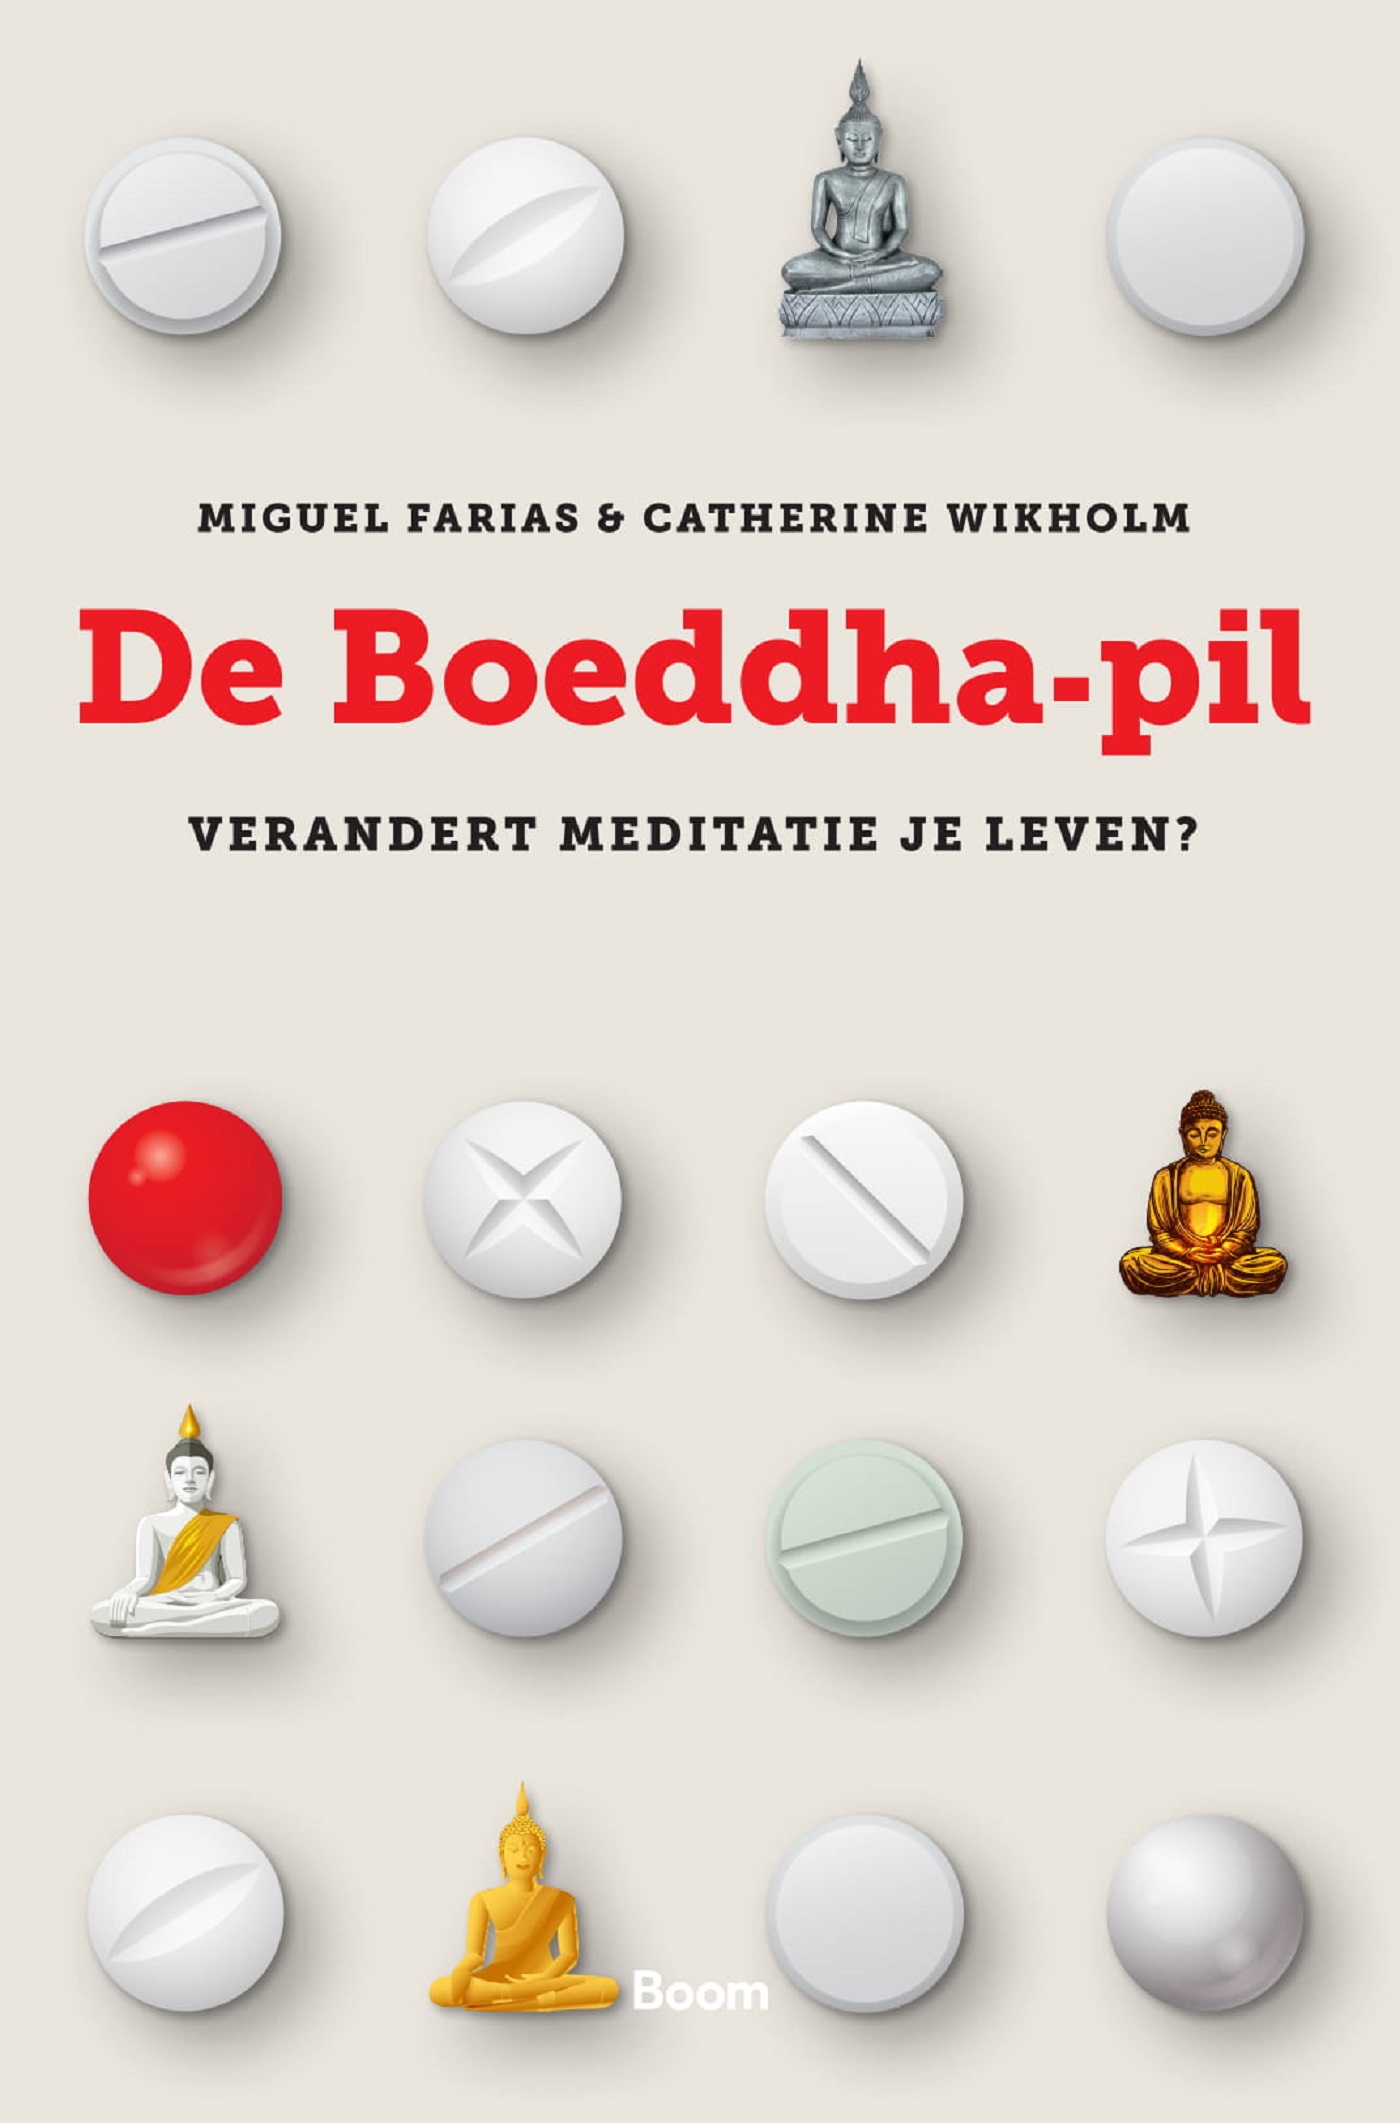 De Boeddha-pil (Ebook)